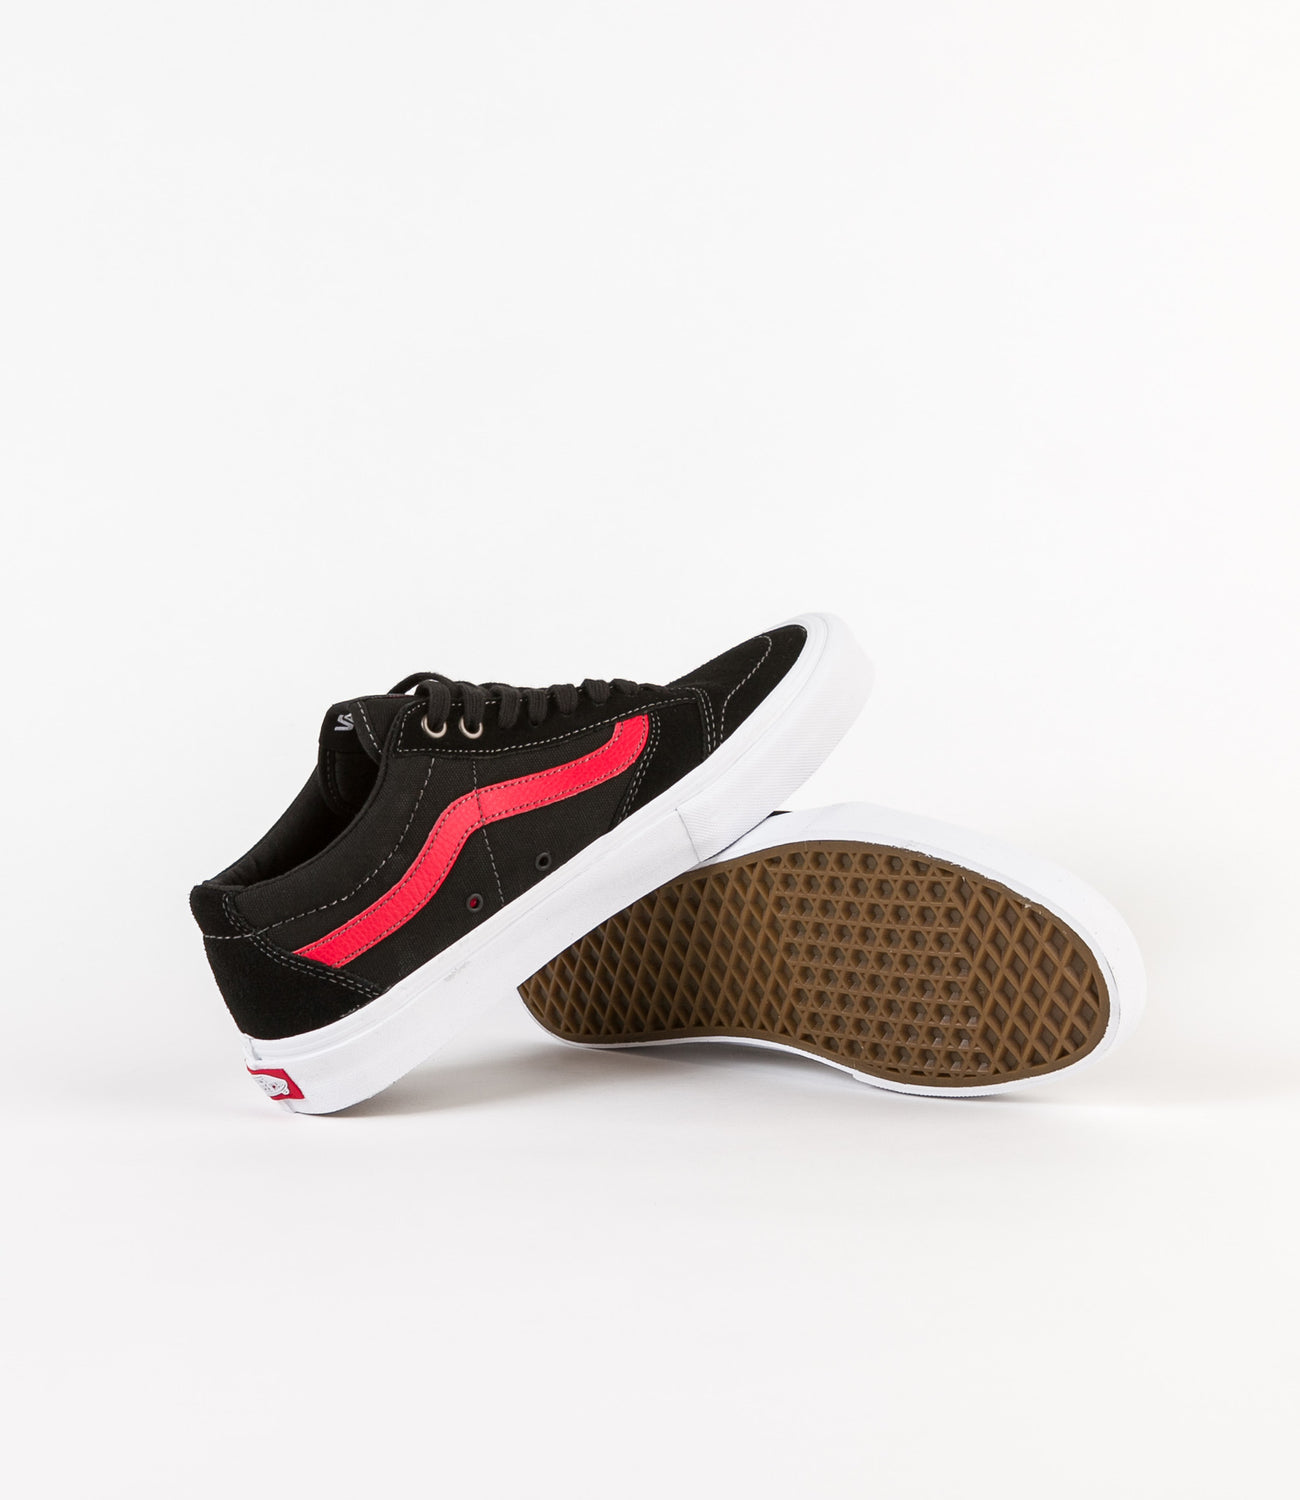 Maken voetstappen Arrangement Vans TNT SG Shoes - Black / Racing Red | Flatspot